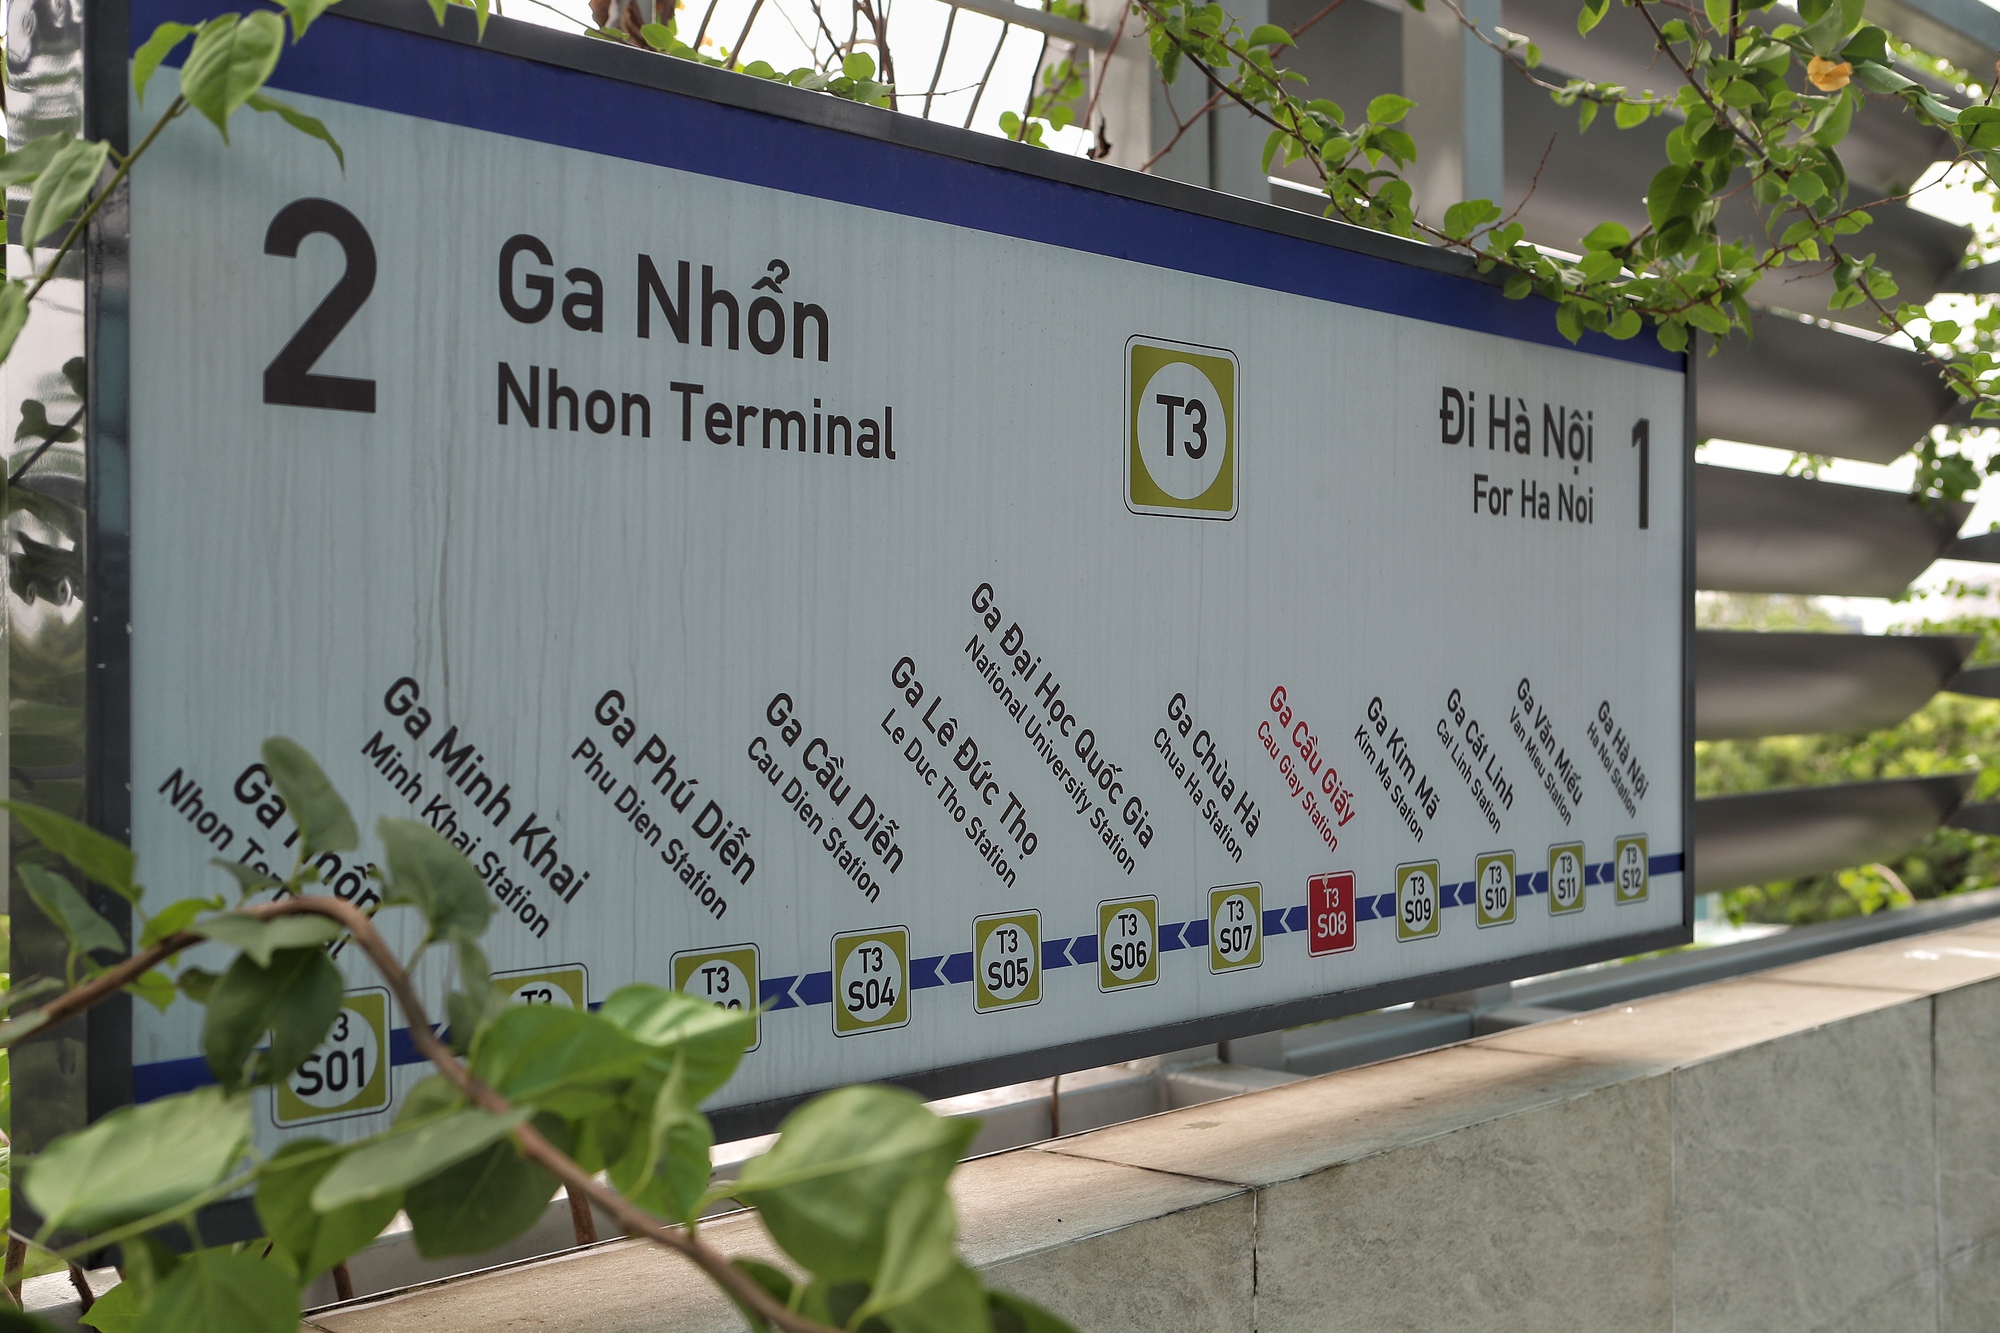 Dự án Nhổn - ga Hà Nội: Hoàn thành xây dựng, lắp đặt 8 nhà ga trên cao - Ảnh 12.